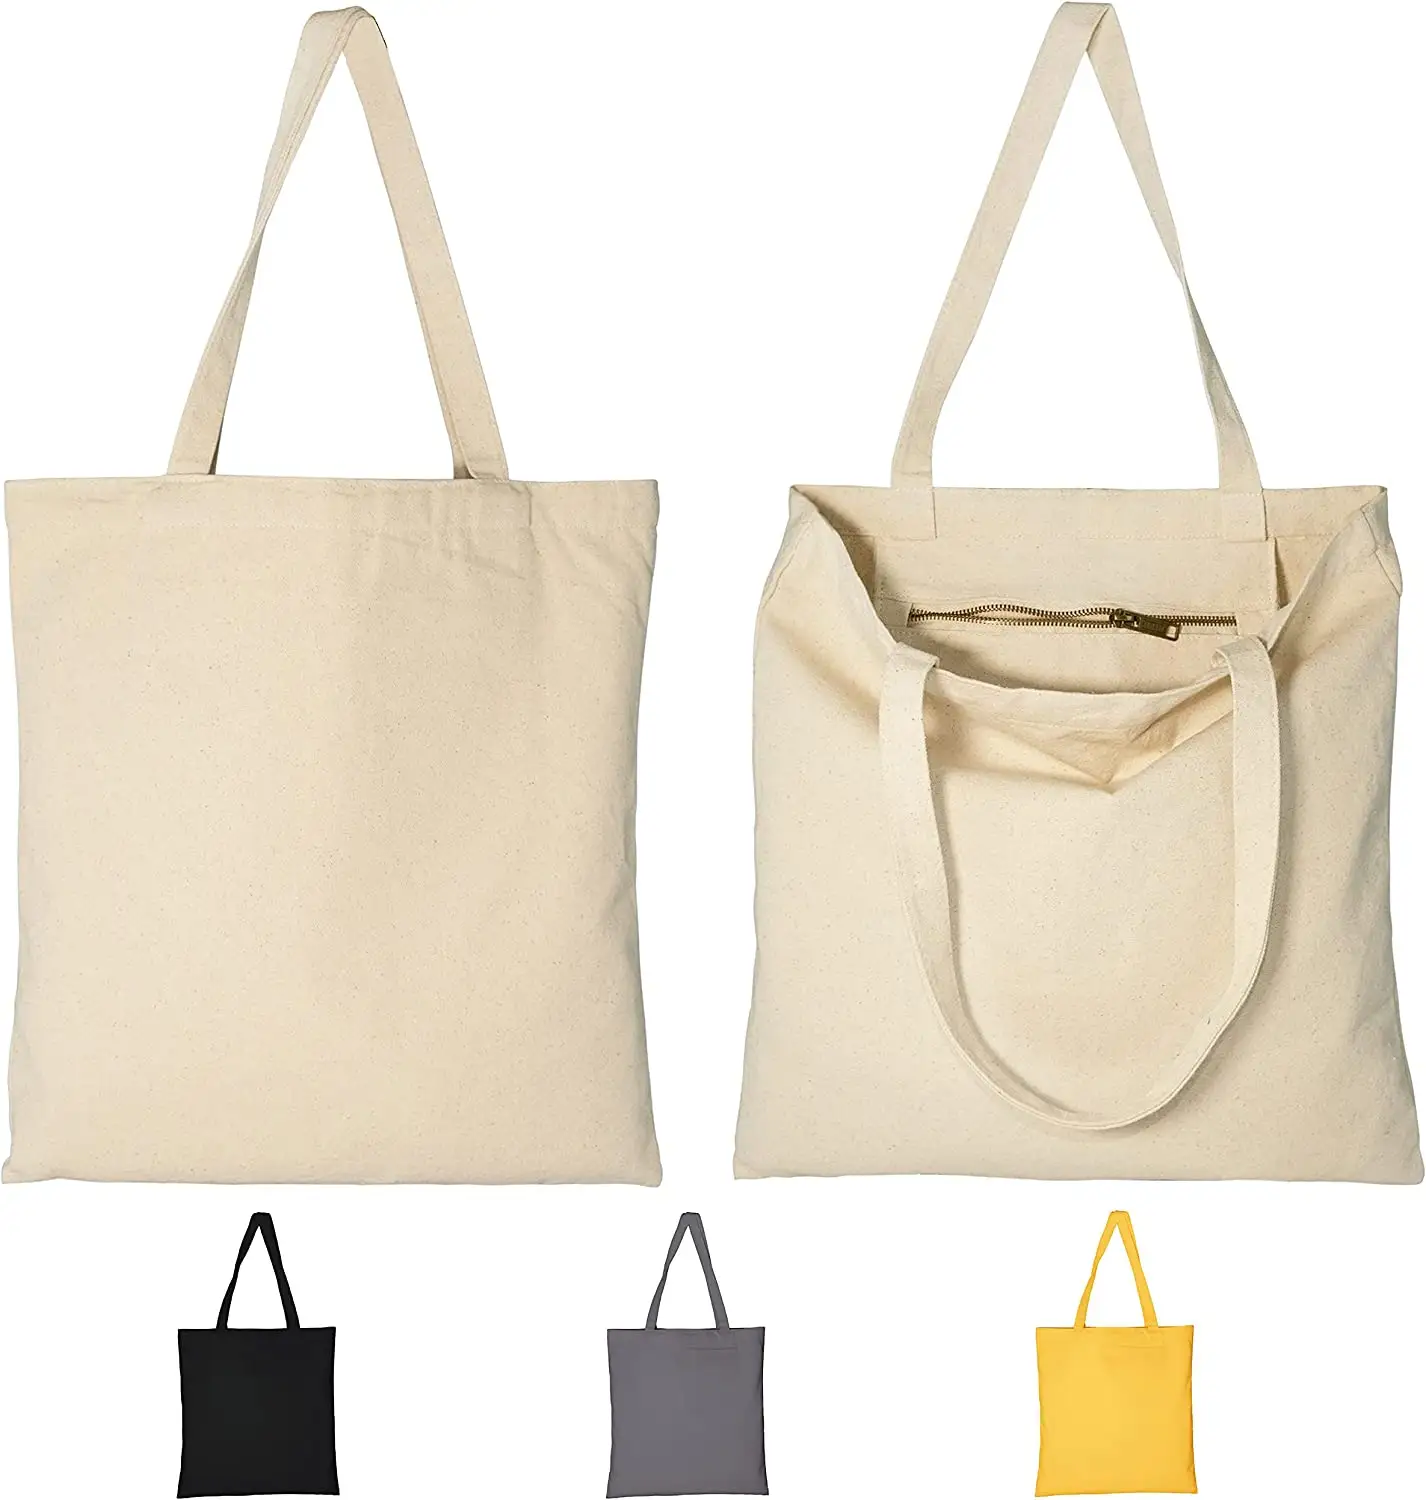 حقيبة تسوق ترويجية بطبعة DIY مخصصة للبقالة 100% قطن حقيبة هدايا حقيبة حمل قماشية قاسية للاستخدام المتكرر مزودة بجيب